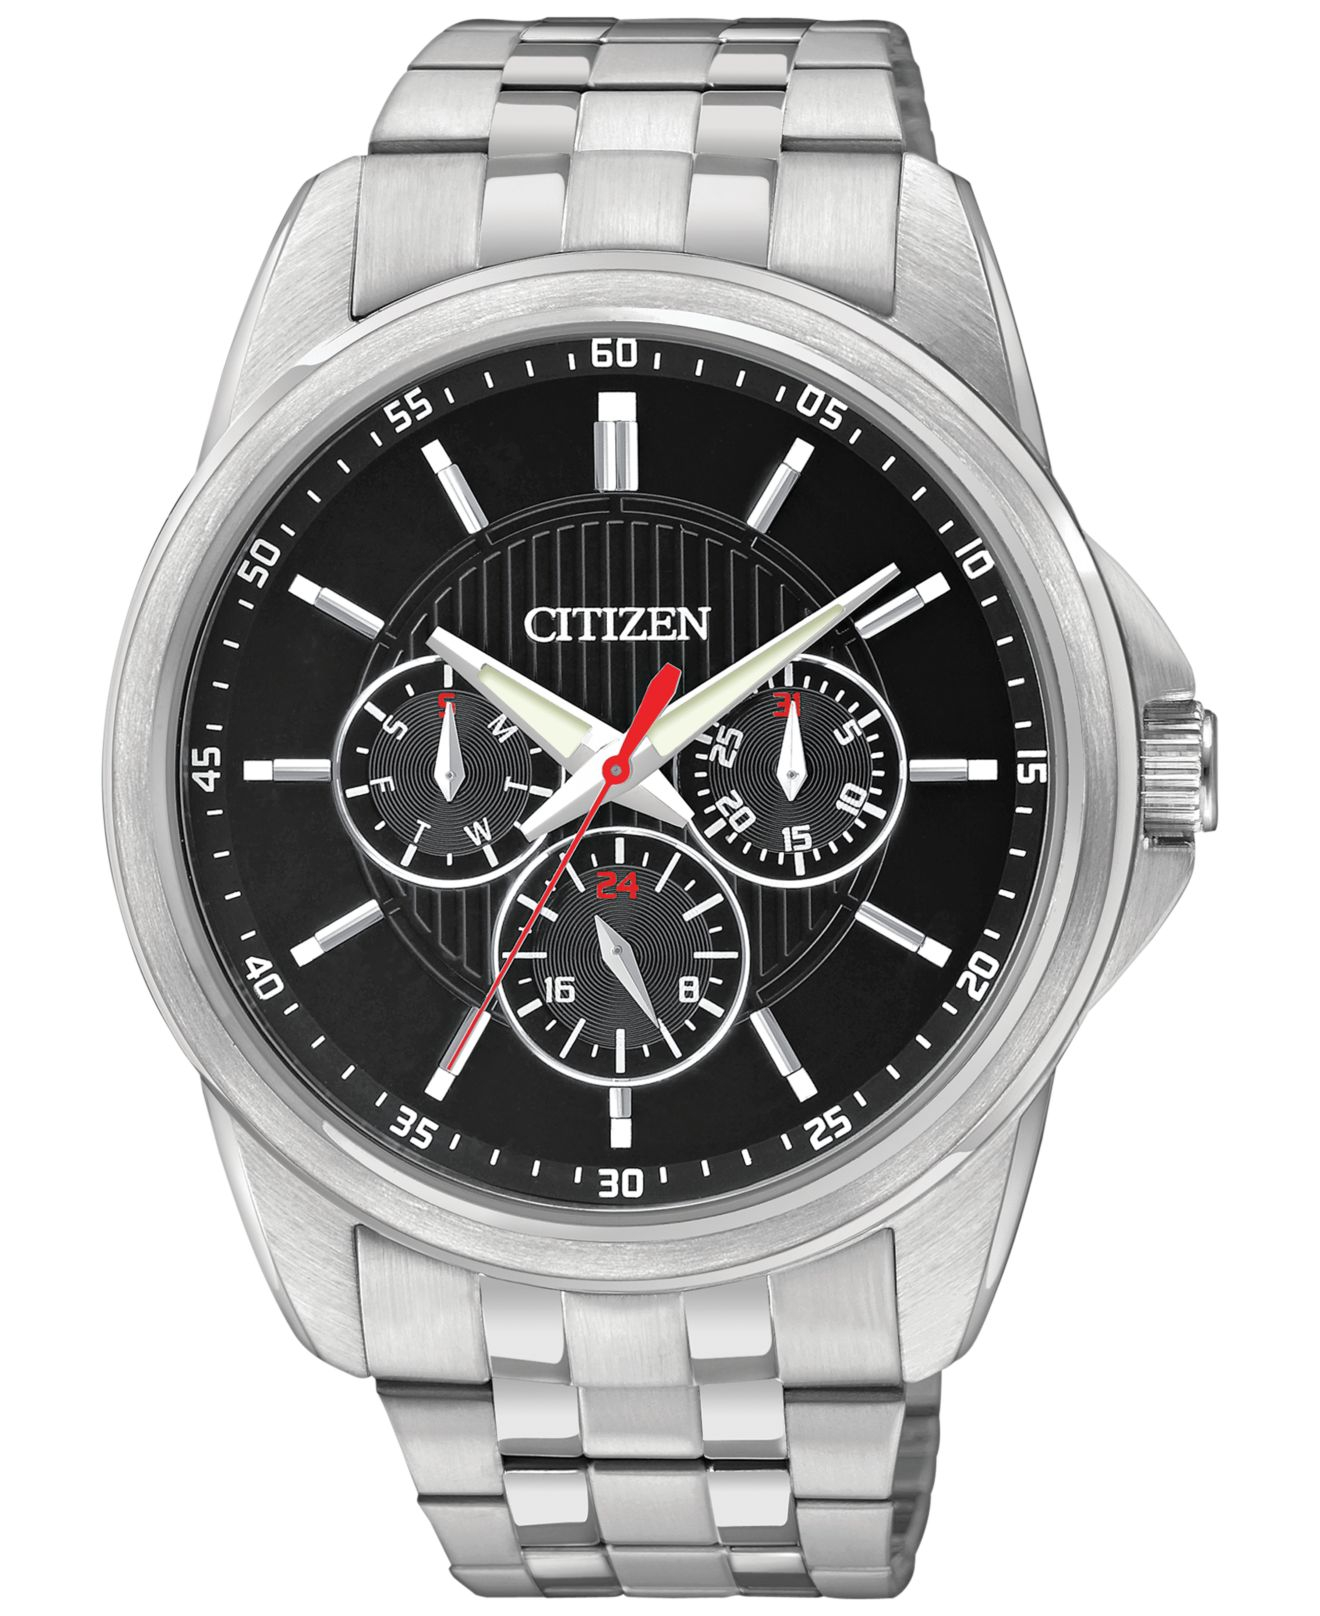 Citizen Men's Stainless Steel Bracelet Watch 42mm Ag8340-58e in Gray